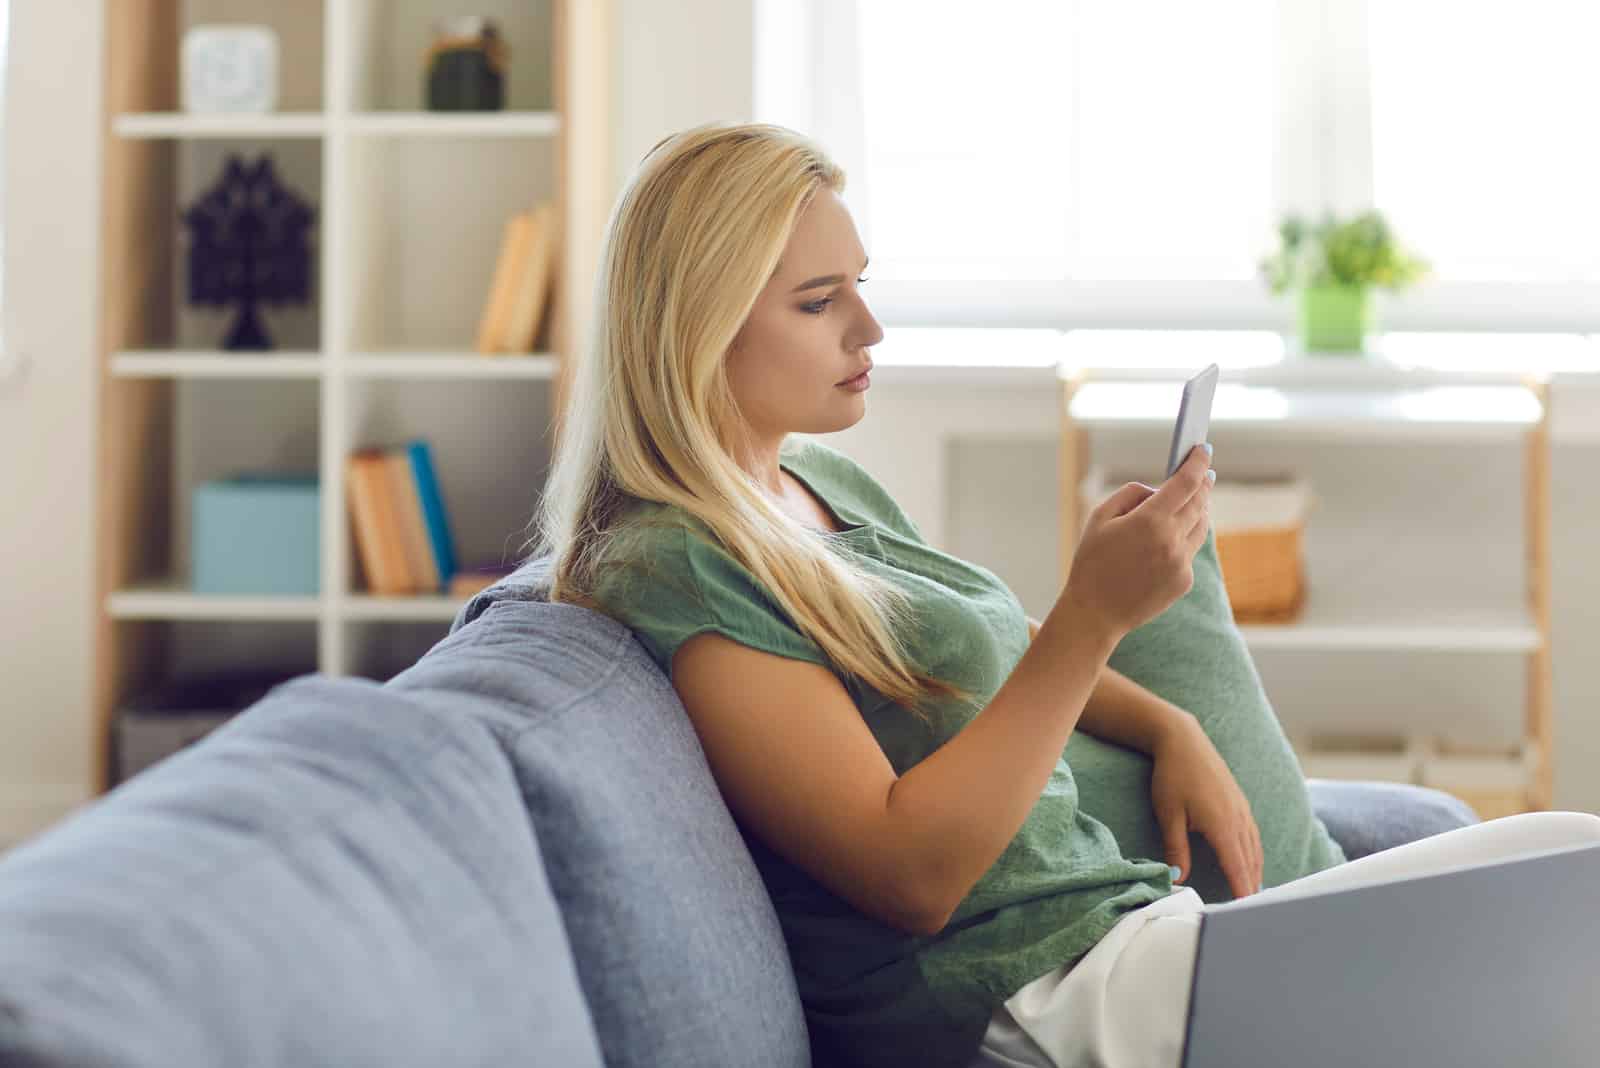 une femme aux longs cheveux blonds est assise sur le canapé tenant un téléphone portable à la main